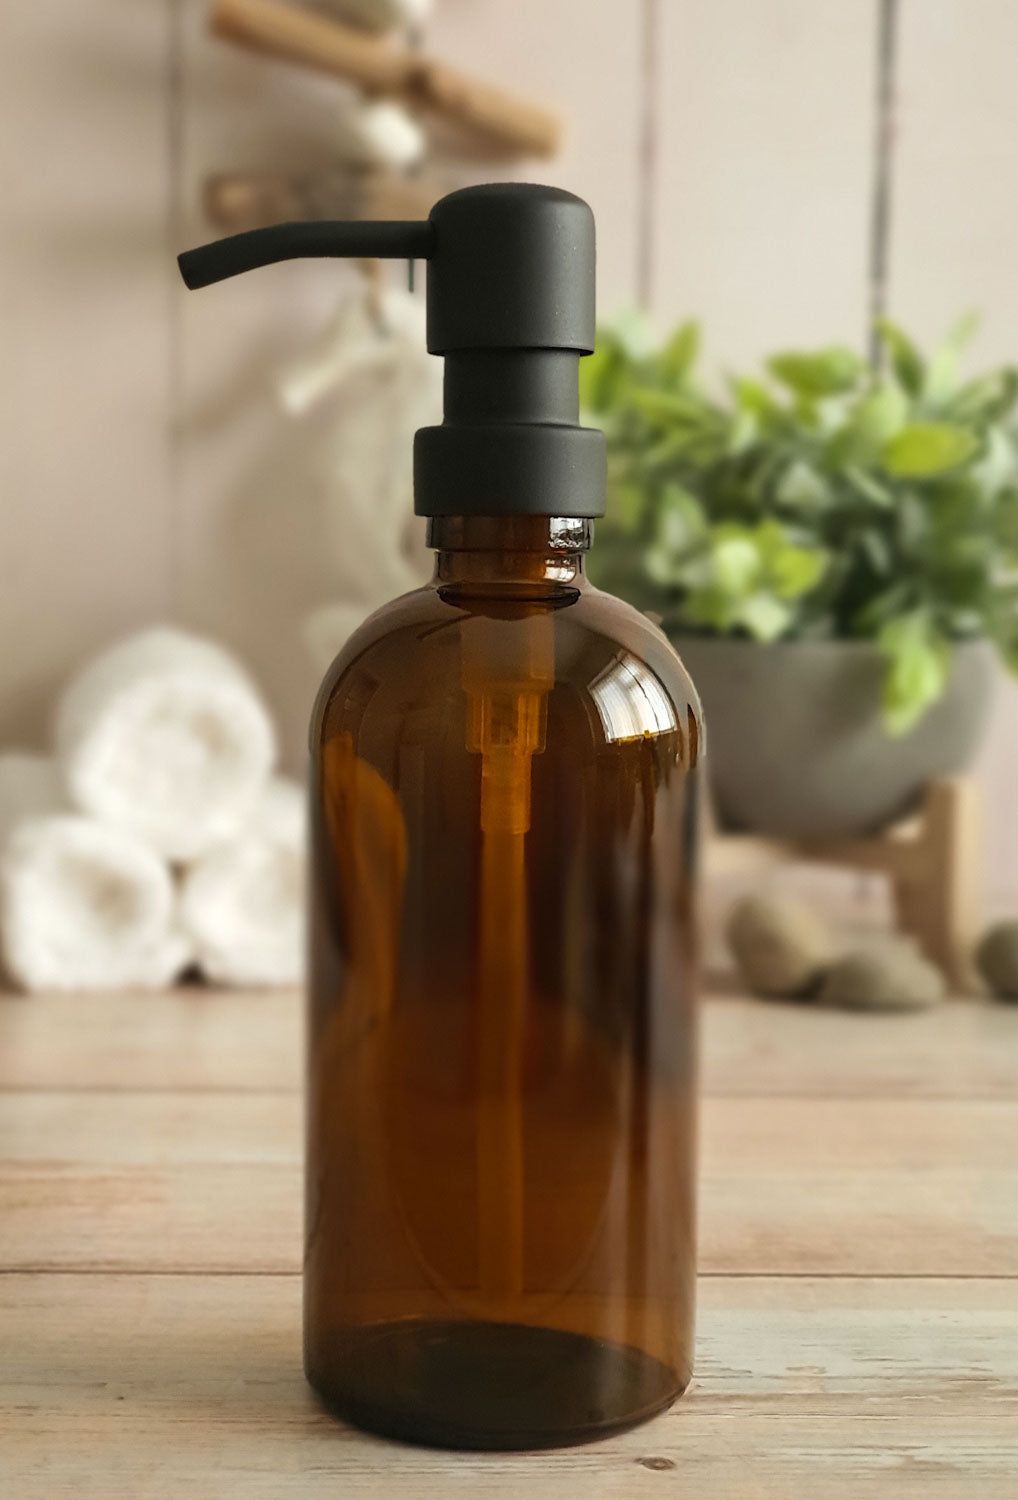 300ml Amber Glass Soap Dispenser Bottles with Matt Black Metal Pump